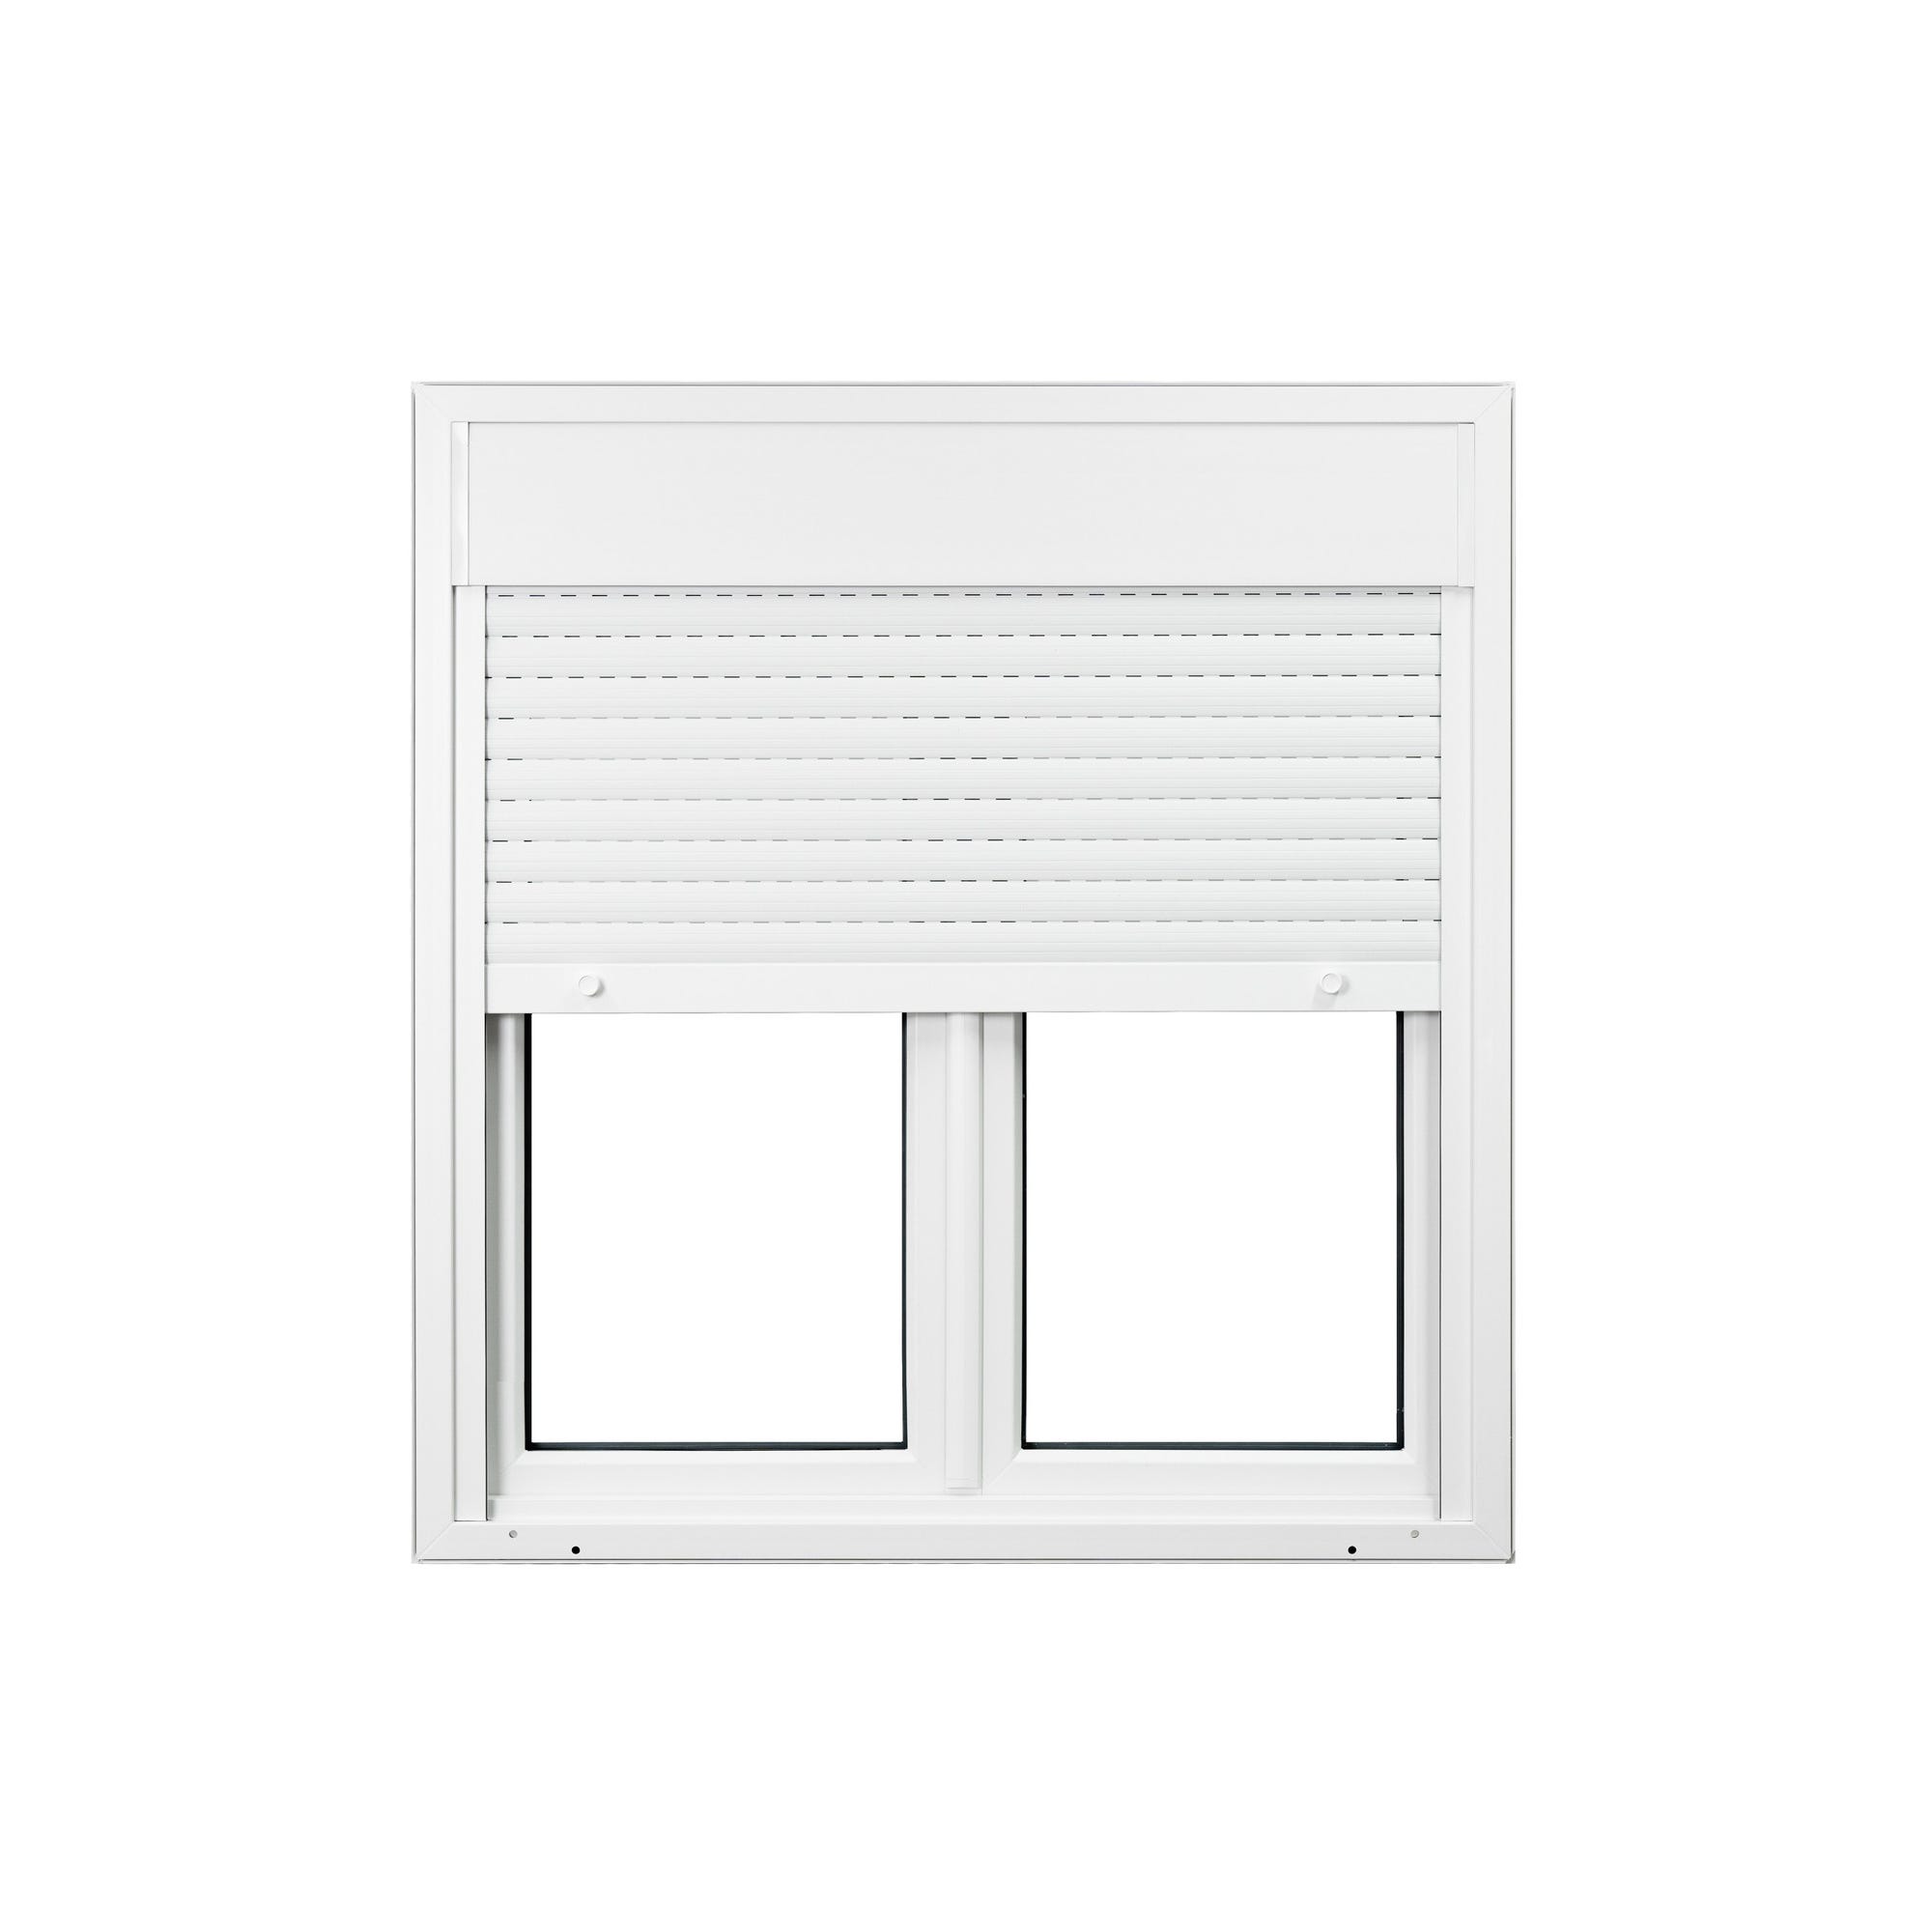 Fenêtre PVC 2 vantaux avec volet roulant intégré monobloc H.115 x l.120 cm - GROSFILLEX 2